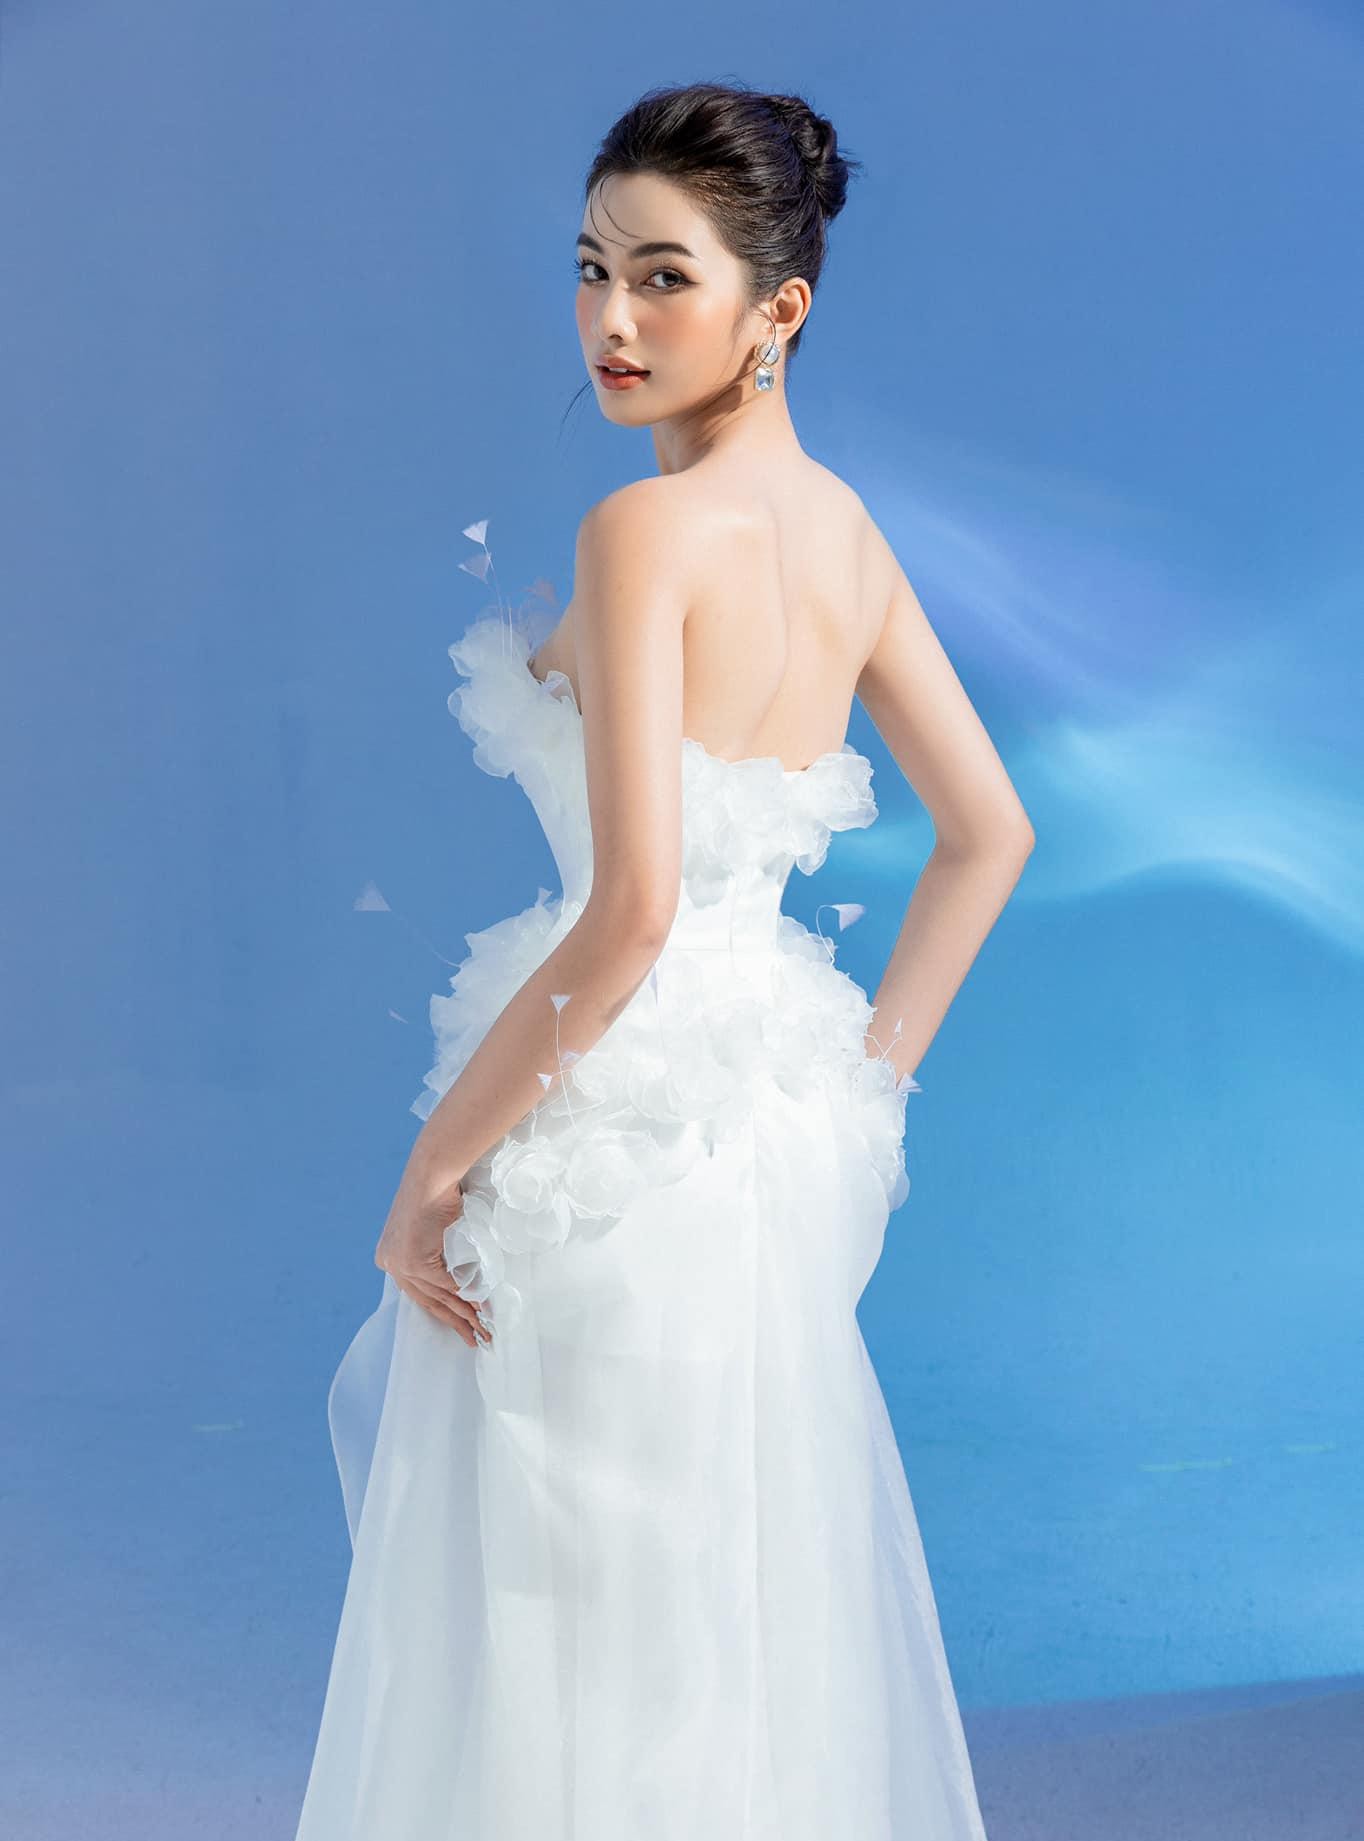 Kỳ Duyên thả dáng nóng bỏng với váy cut-out, Khánh Vân mặc váy dạ hội sexy cách điệu từ áo tắm-5